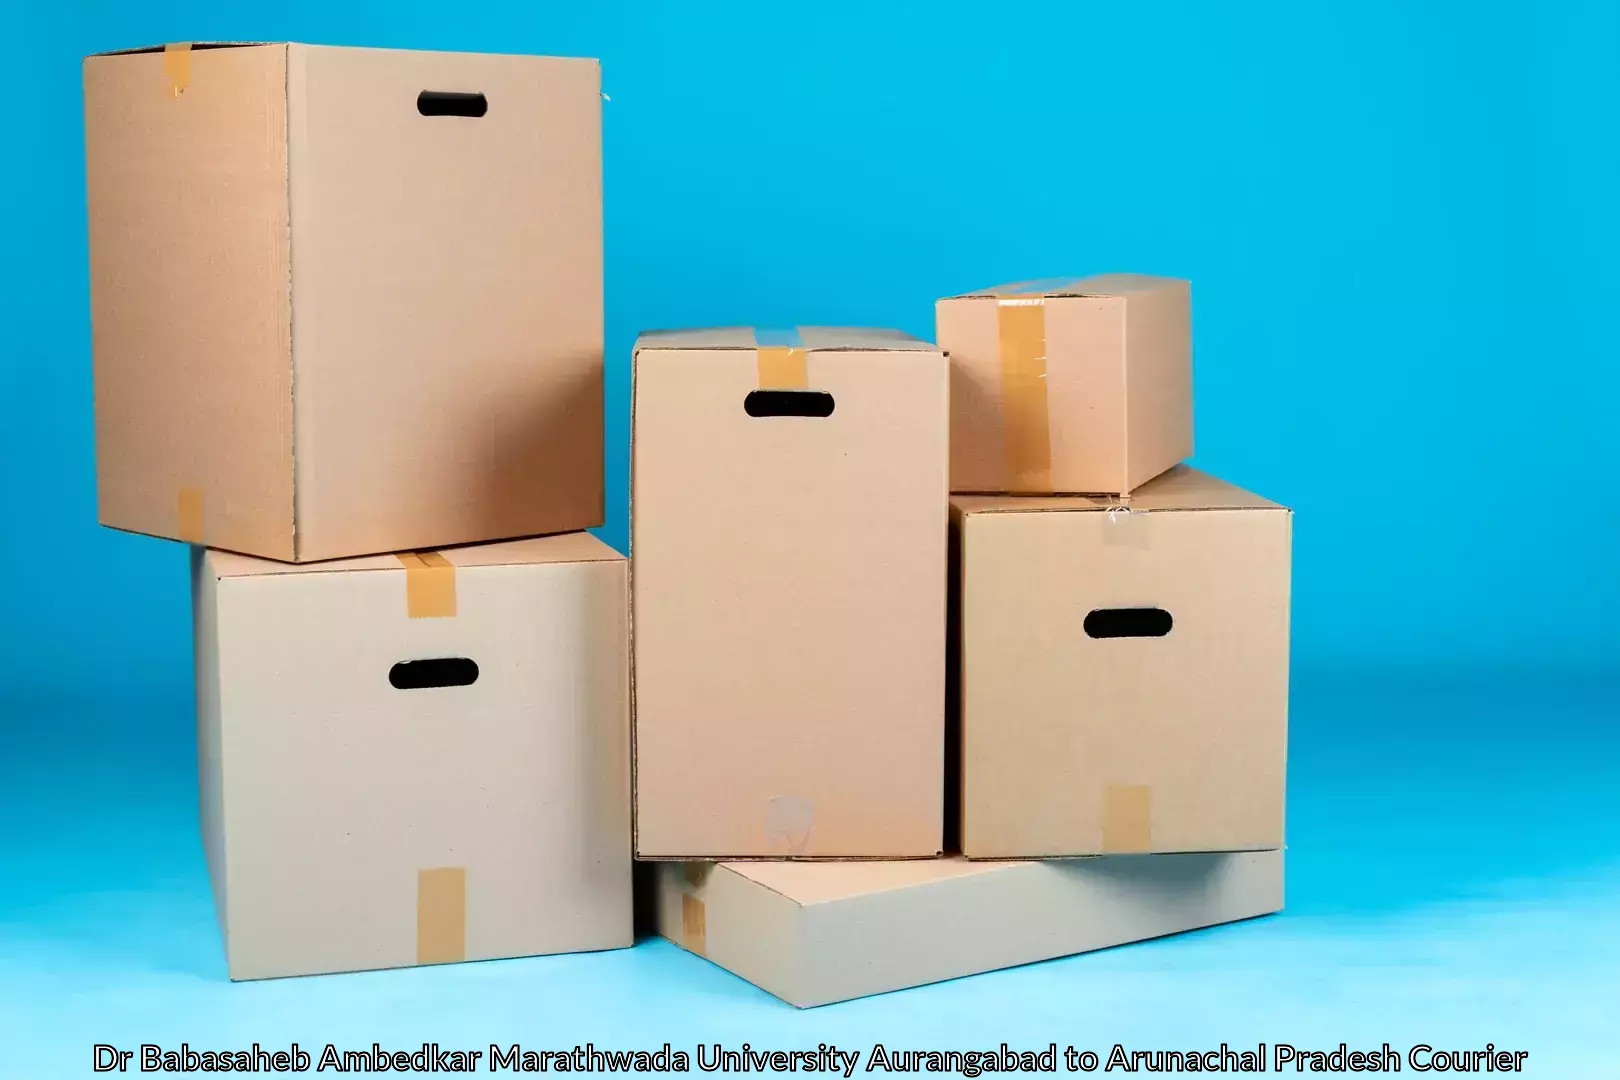 Furniture relocation experts Dr Babasaheb Ambedkar Marathwada University Aurangabad to Kurung Kumey